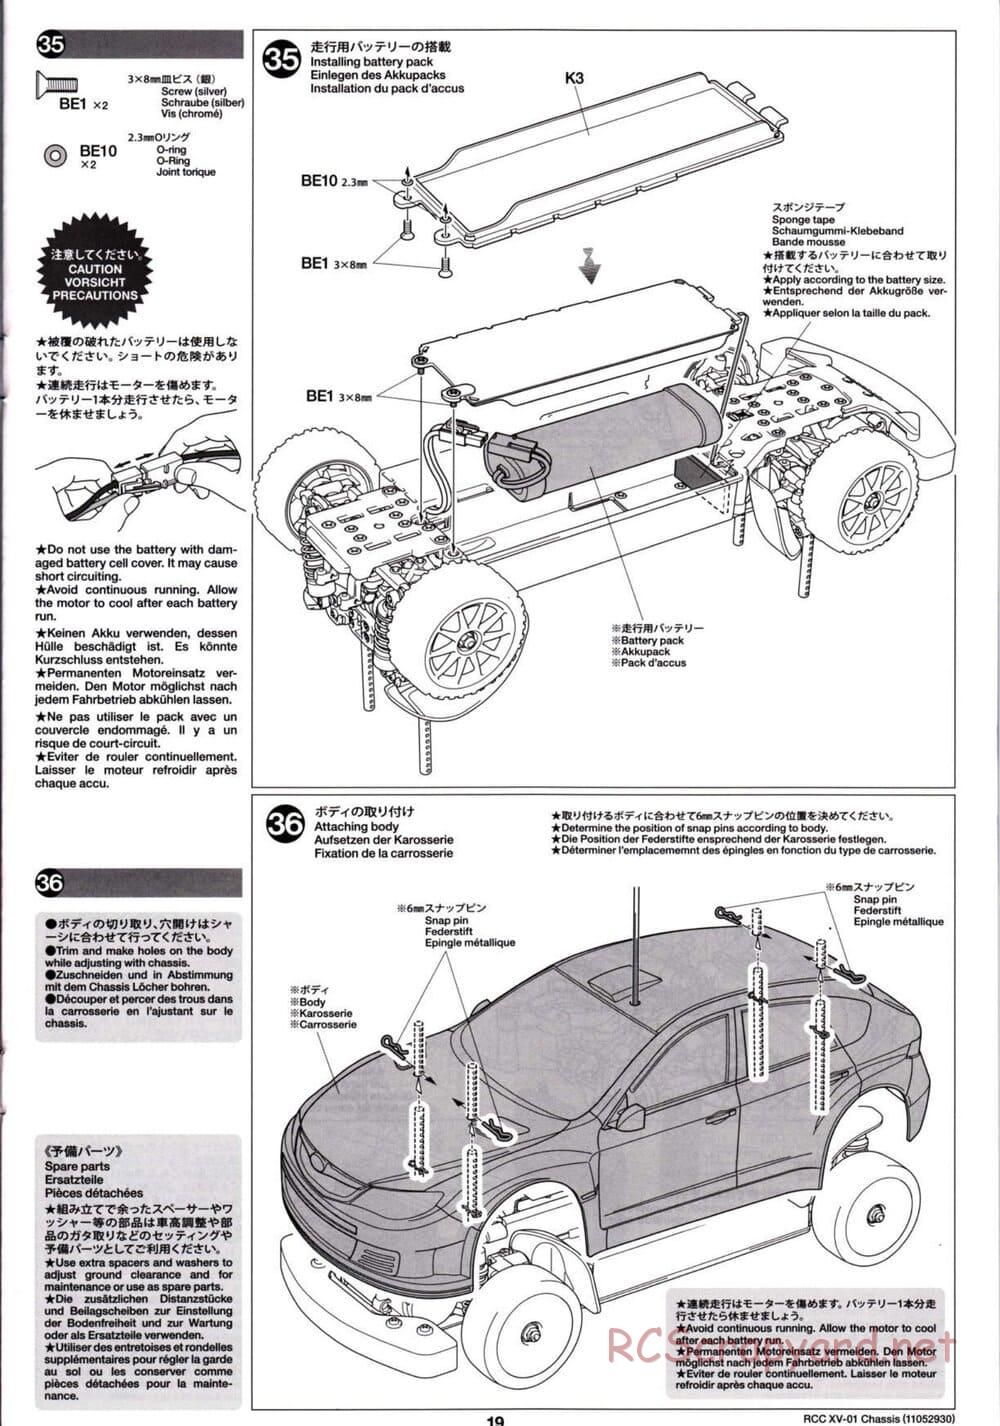 Tamiya - XV-01 Chassis - Manual - Page 20